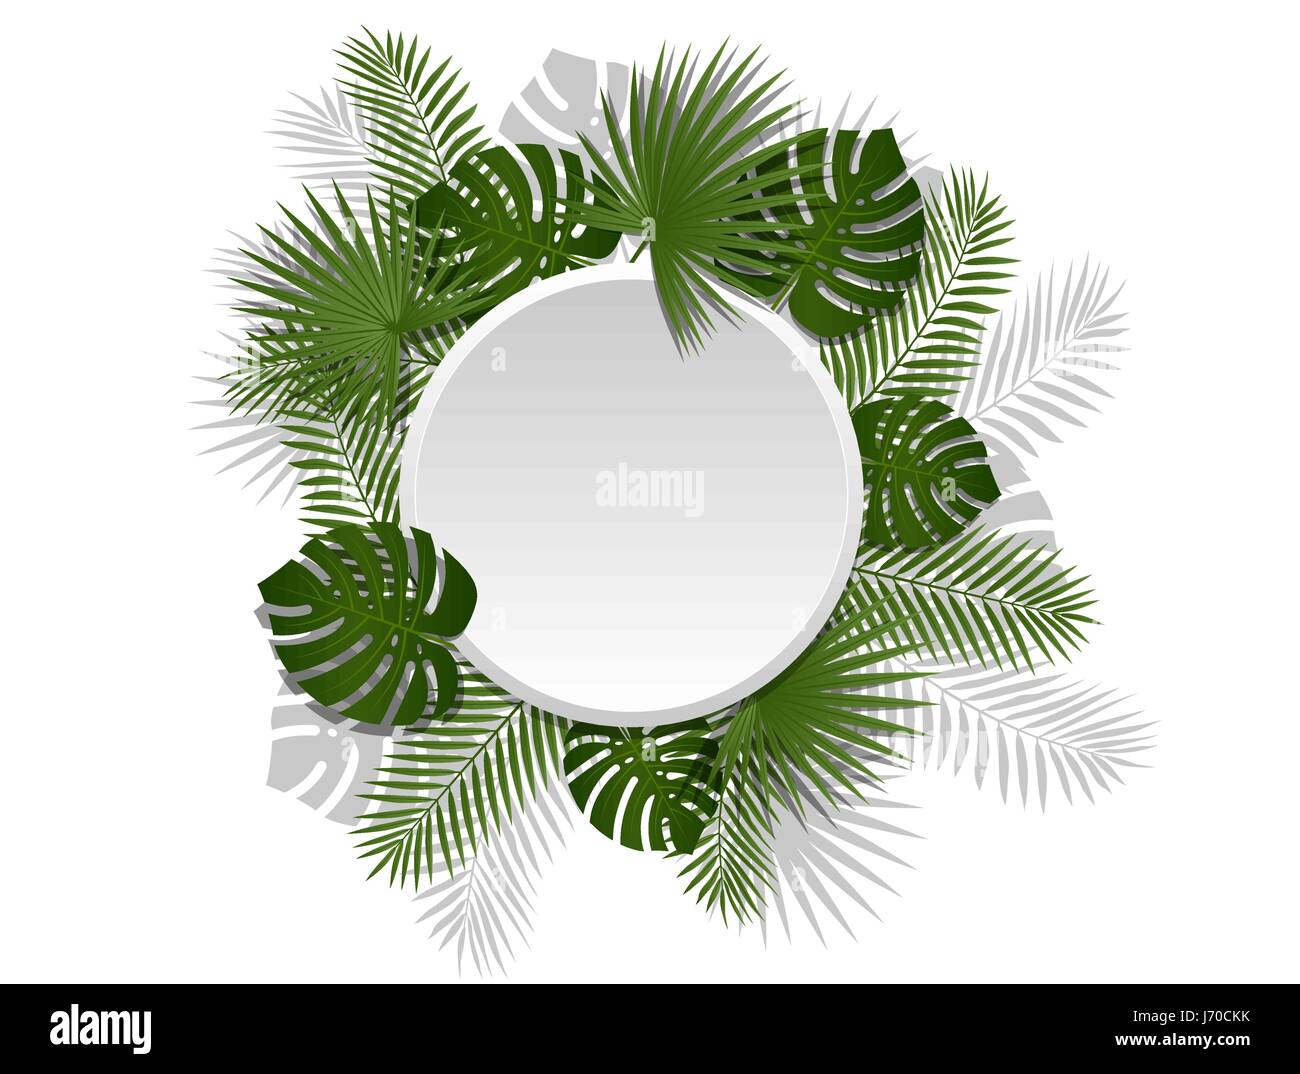 Verano verde encabezado tropical con exóticas plantas y hojas de palmera. Vector diseño floral en línea blanca de fondo. Ilustración del Vector